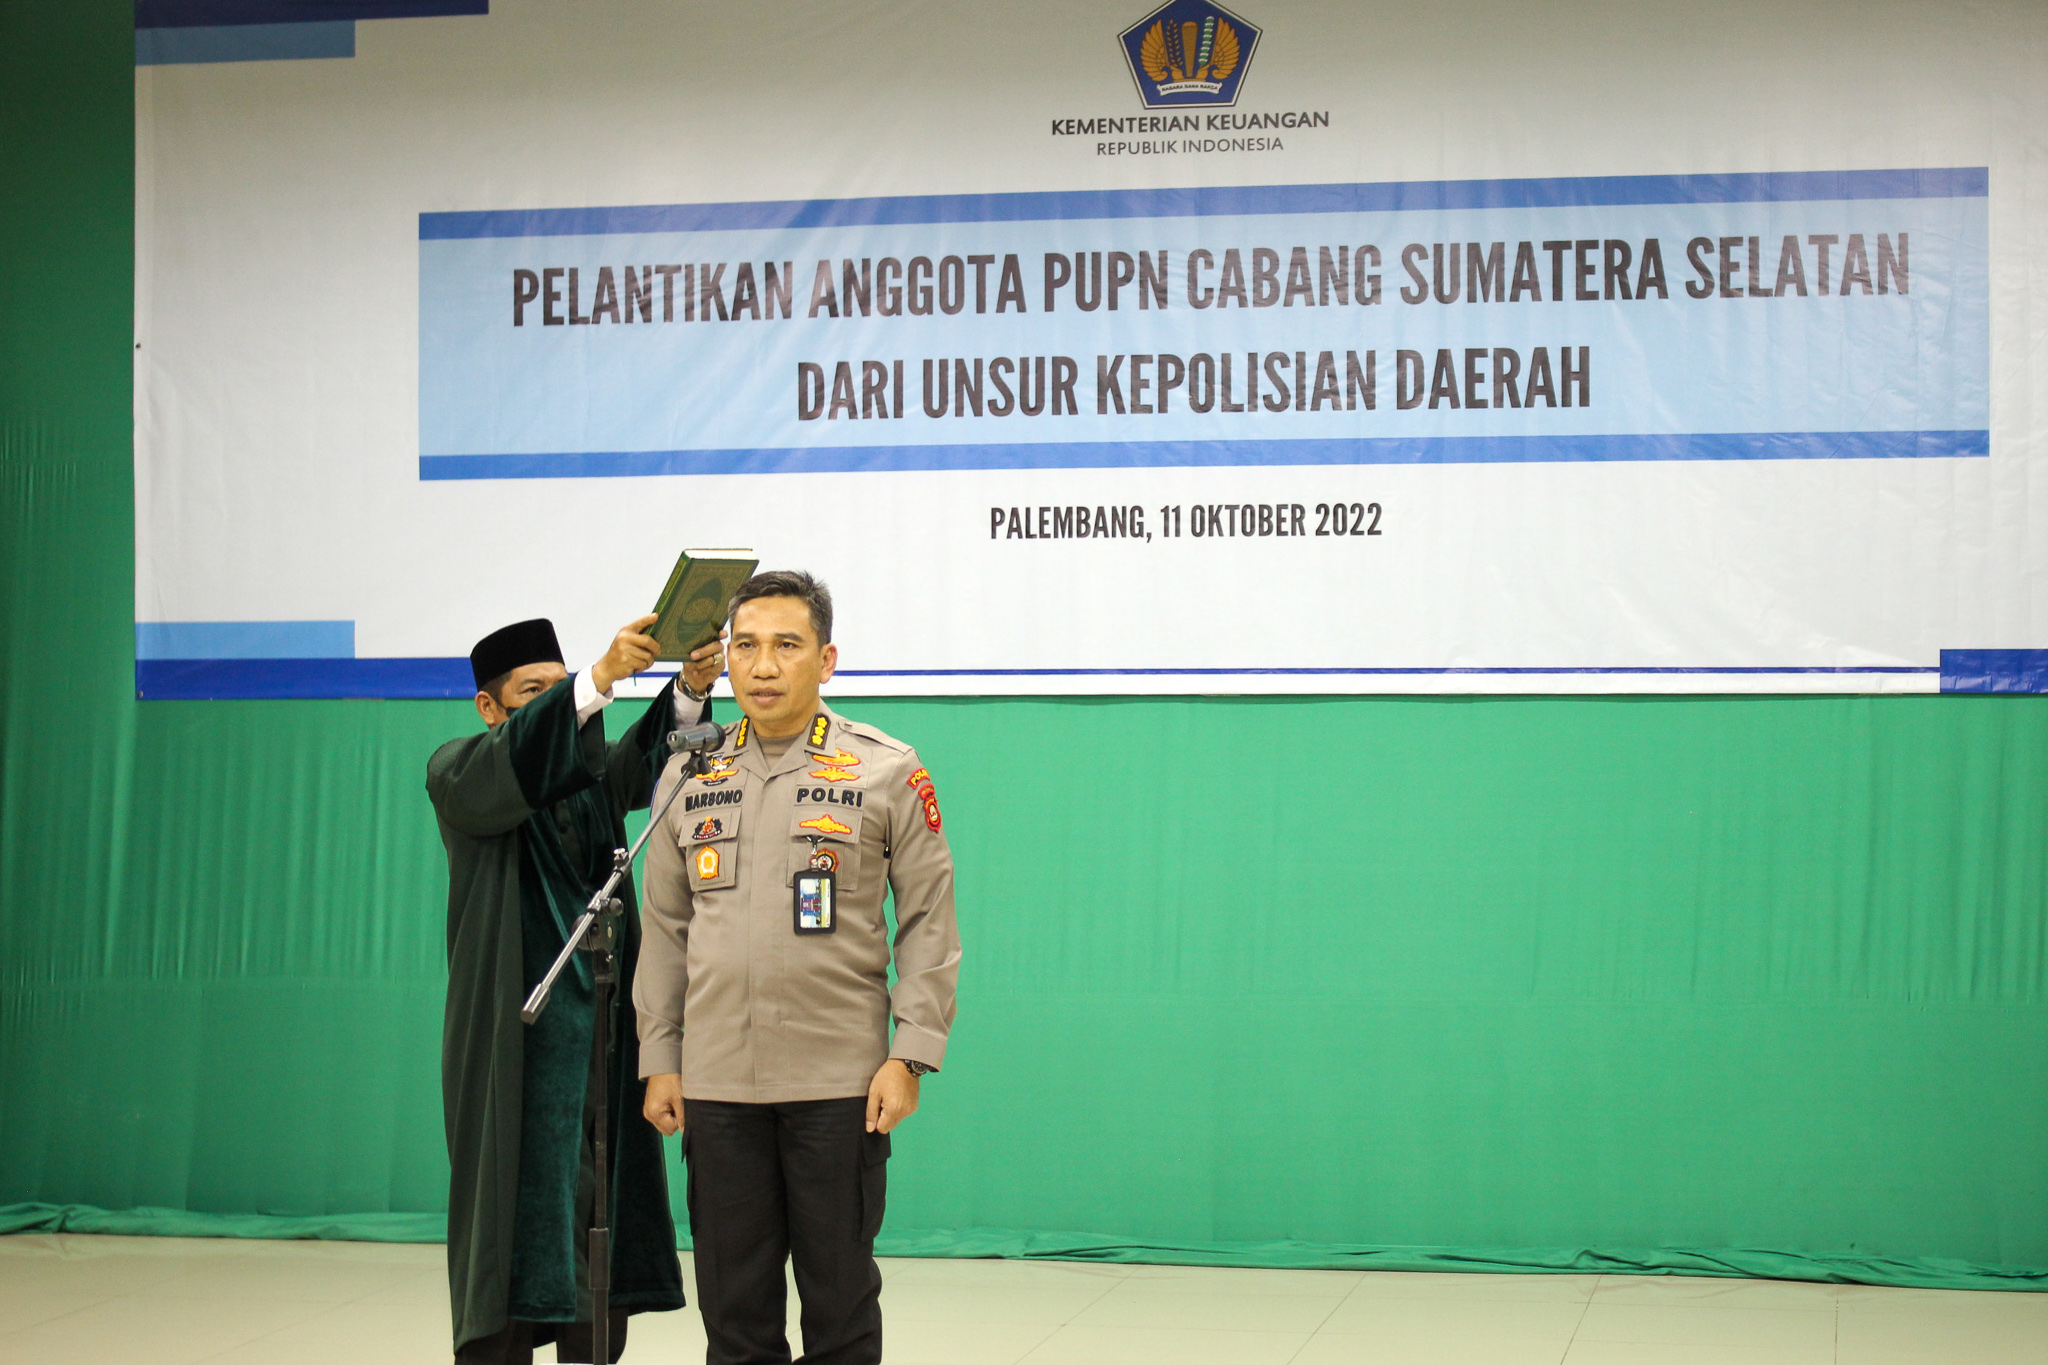 Pelantikan Anggota PUPN Cabang Sumatera Selatan